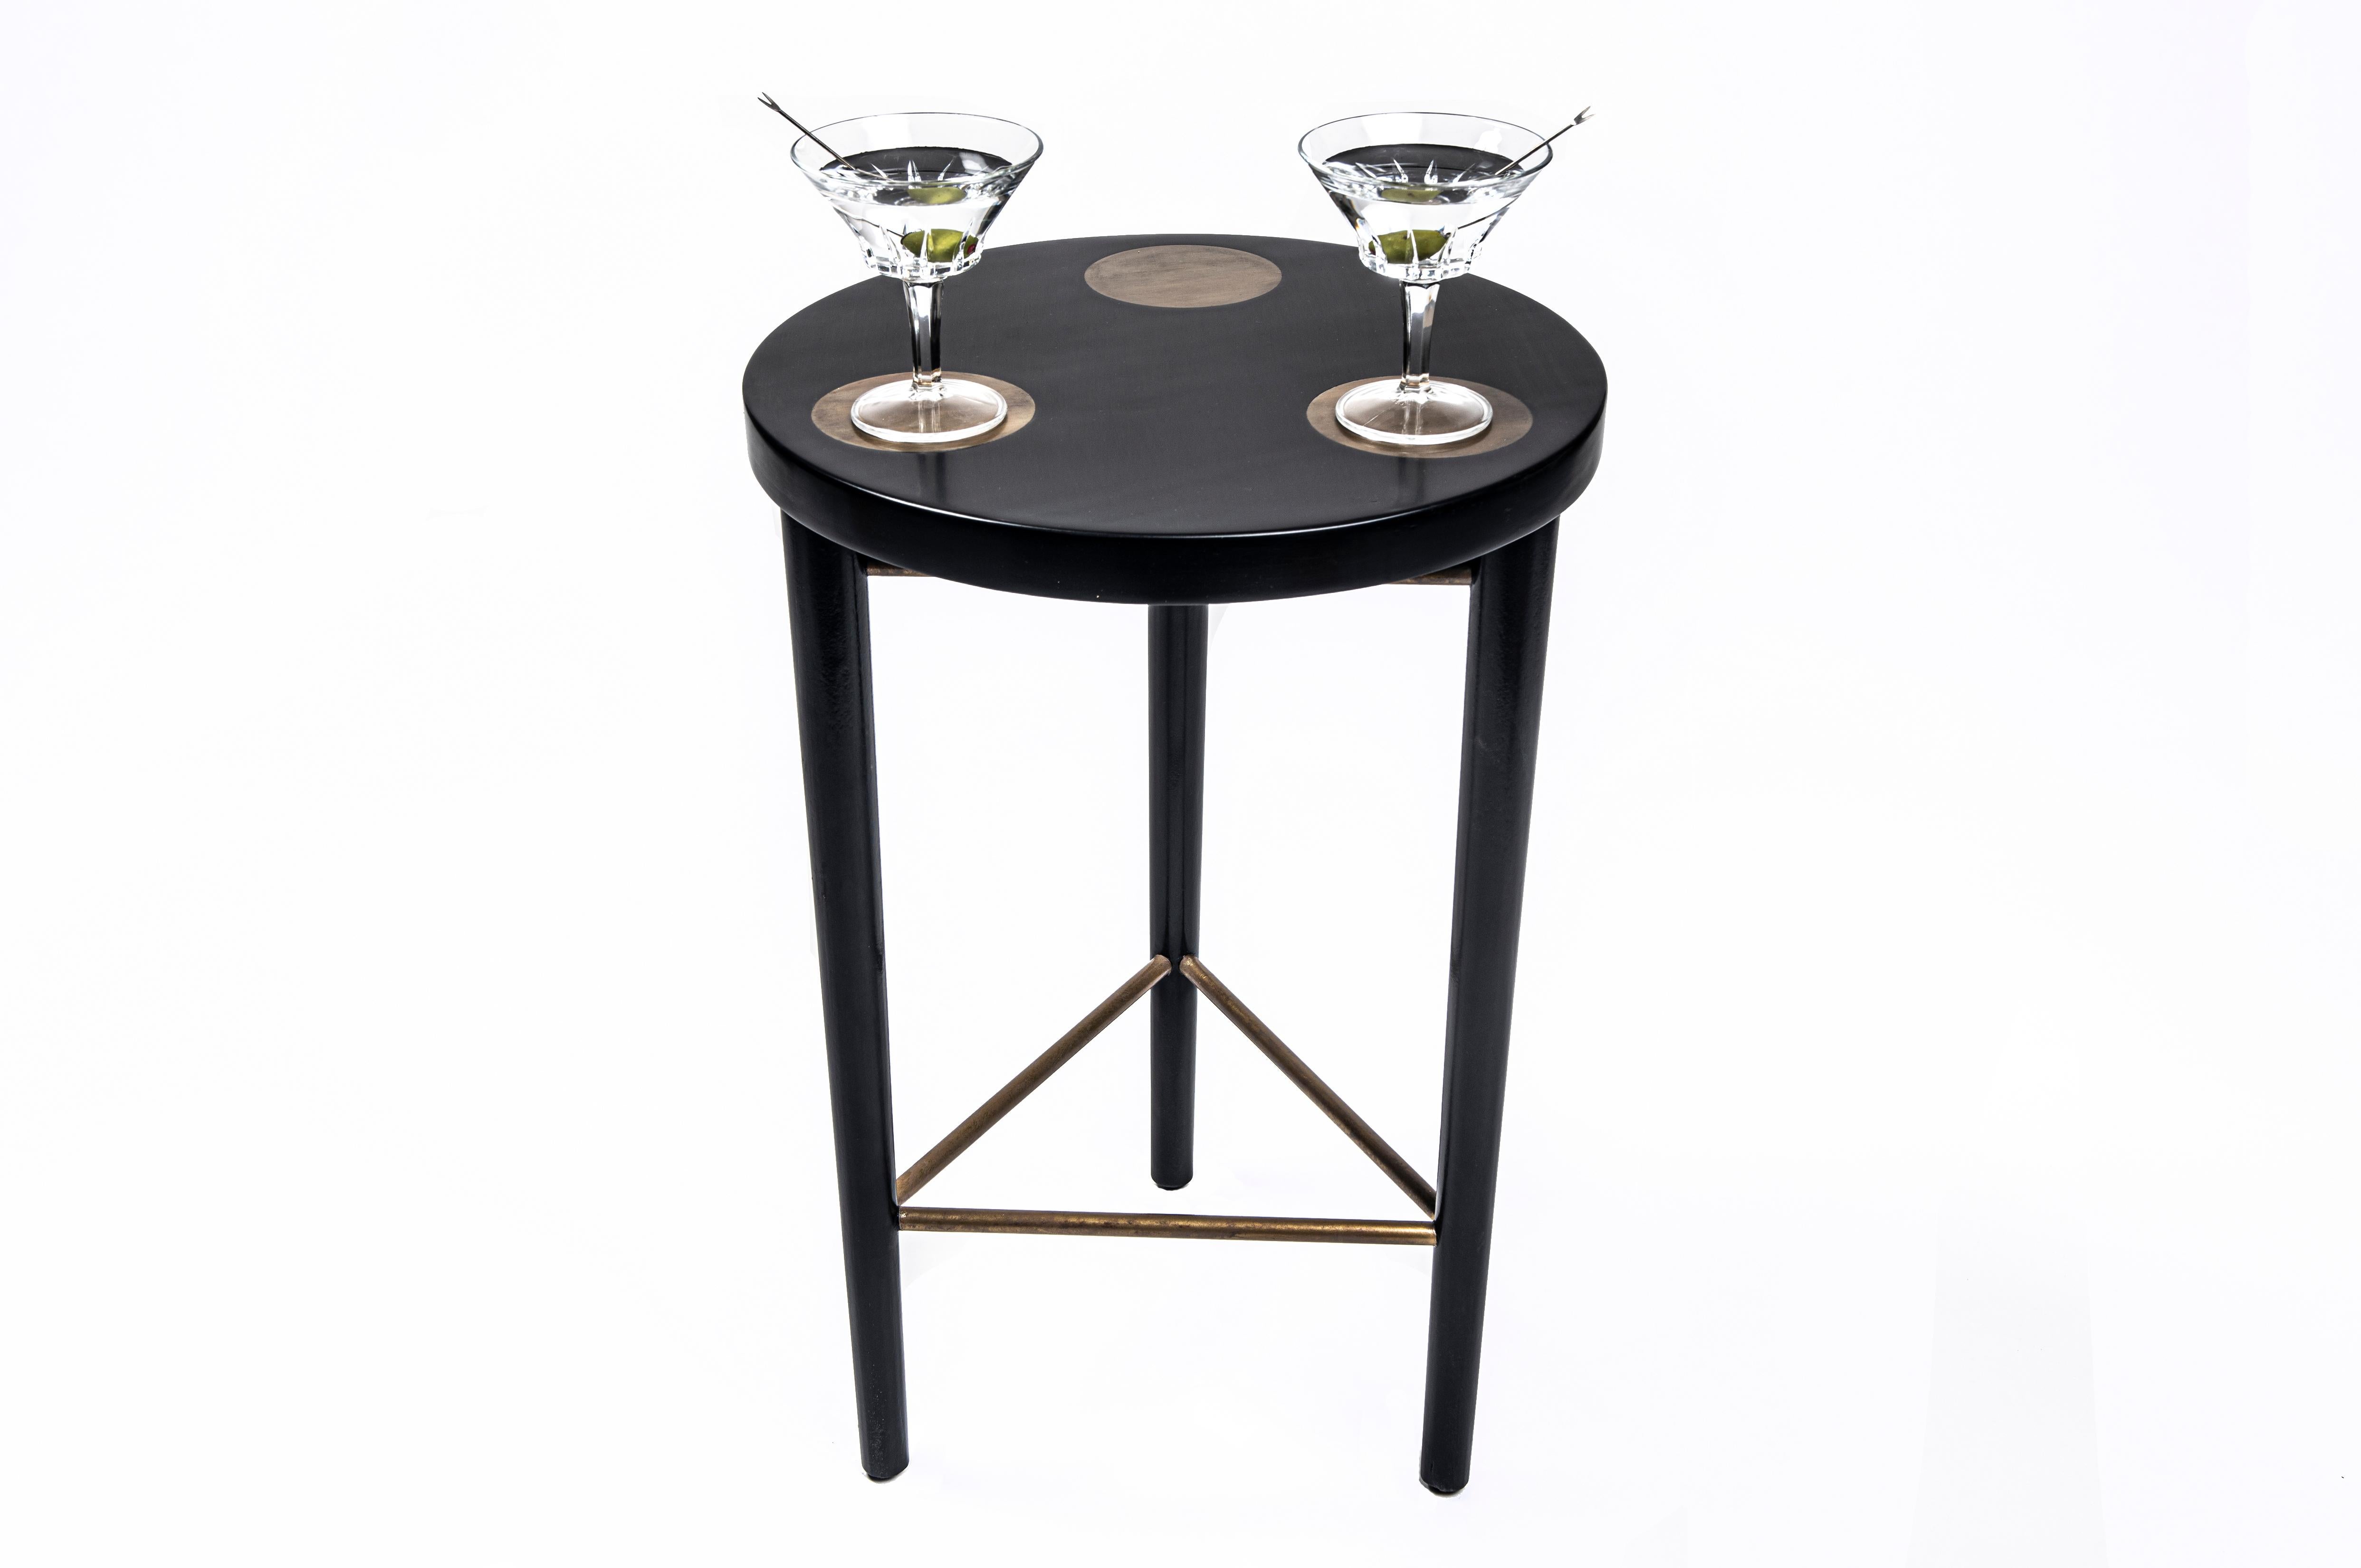 Der Bond Cocktail ist Teil der Modern Hepburn Collection, die einen Standard für anspruchsvolle und zeitlose Möbel setzt und gleichzeitig praktisch und funktional für den modernen Alltag ist.

Inspiriert von der Magie echter menschlicher